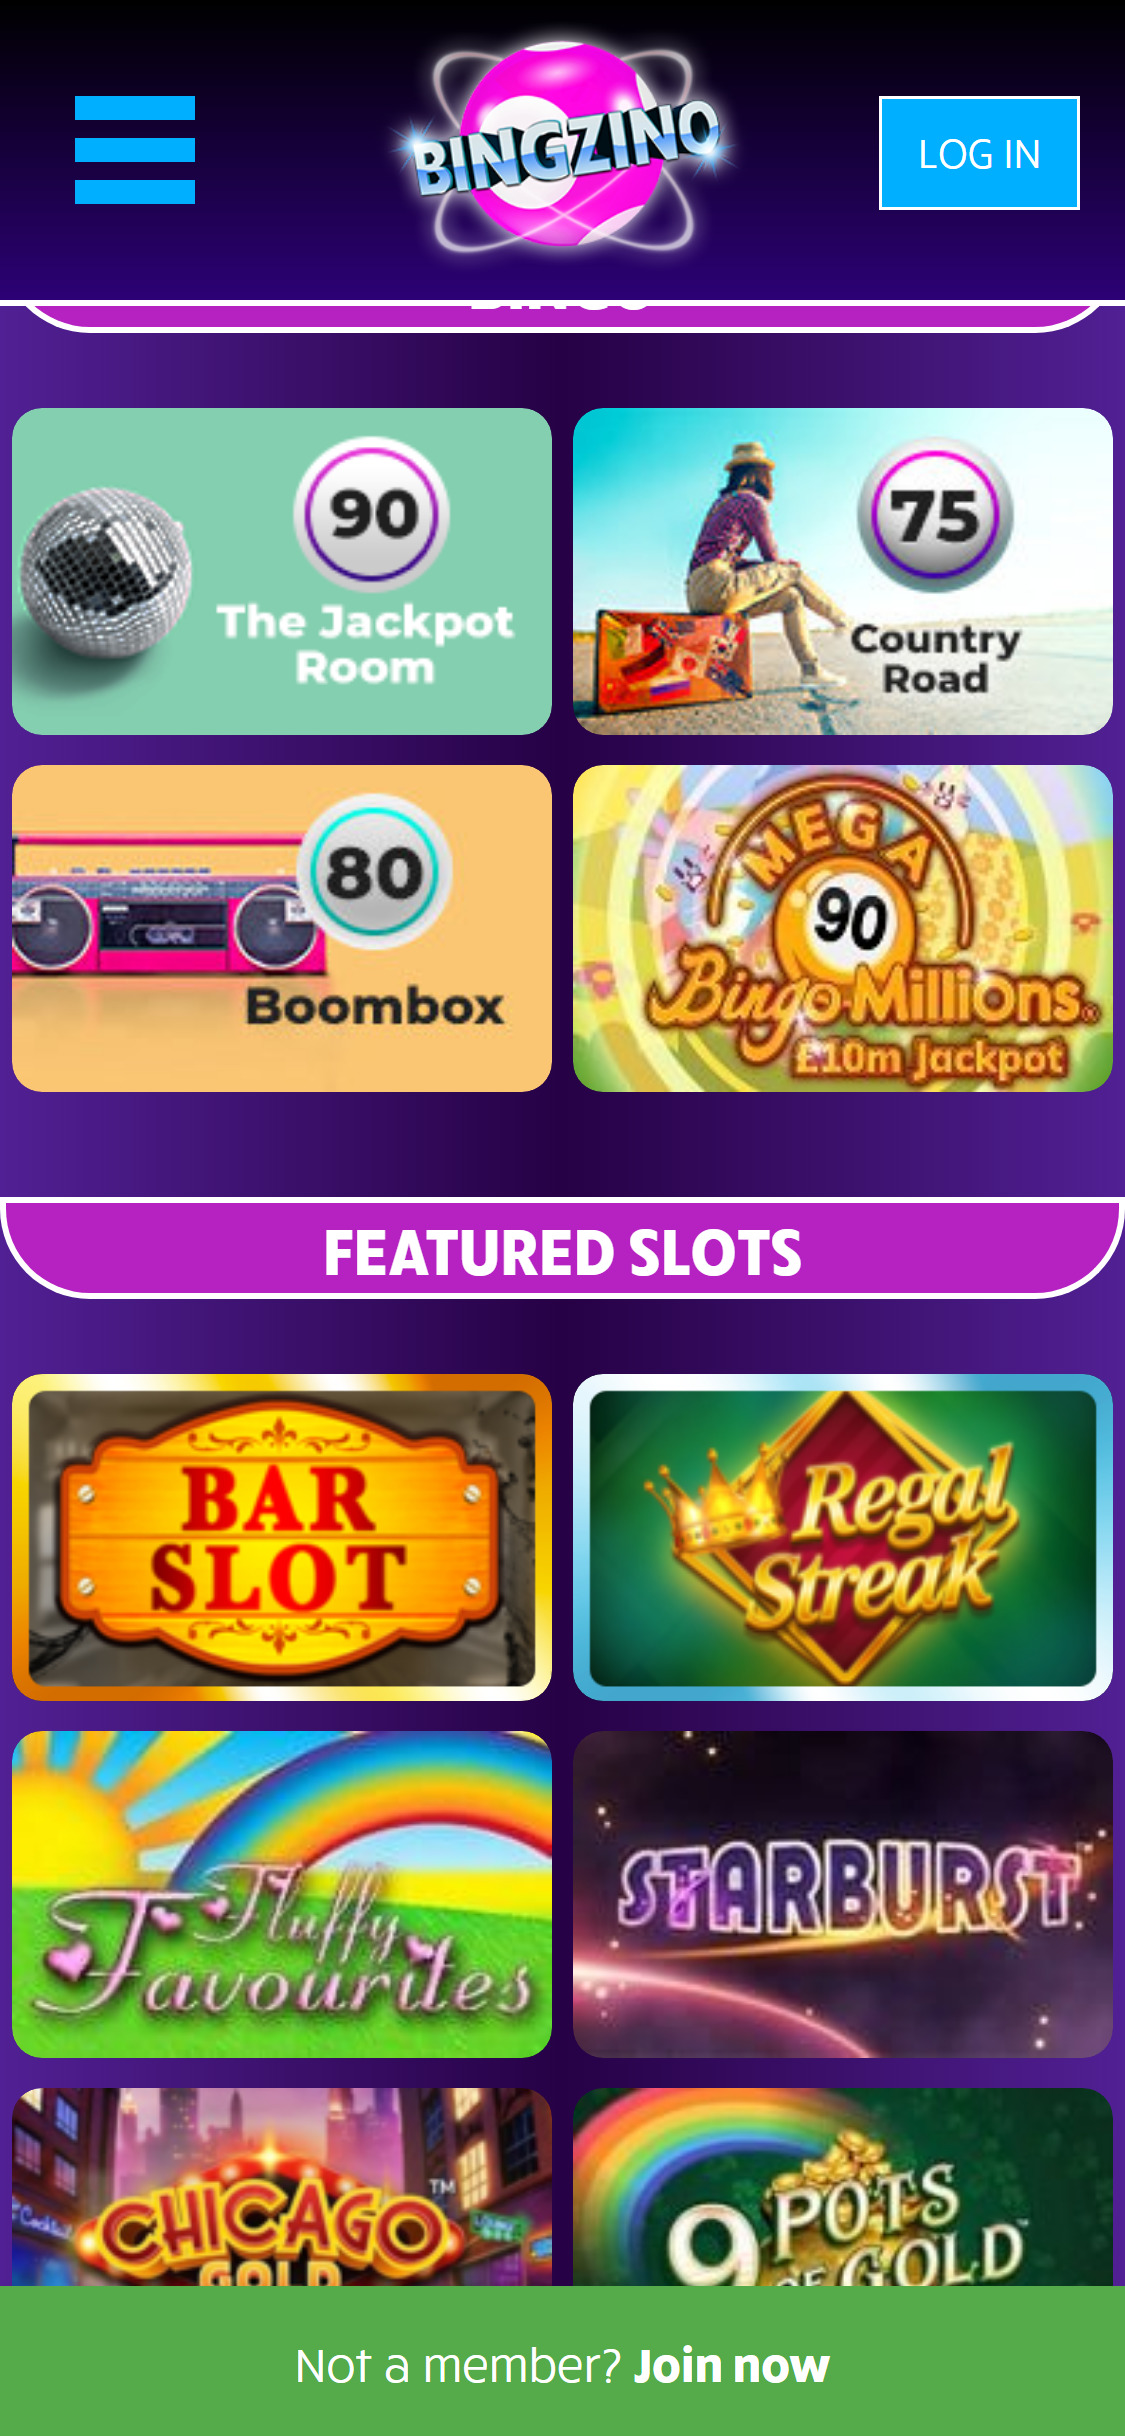 Bingzino Casino Mobile Games Review